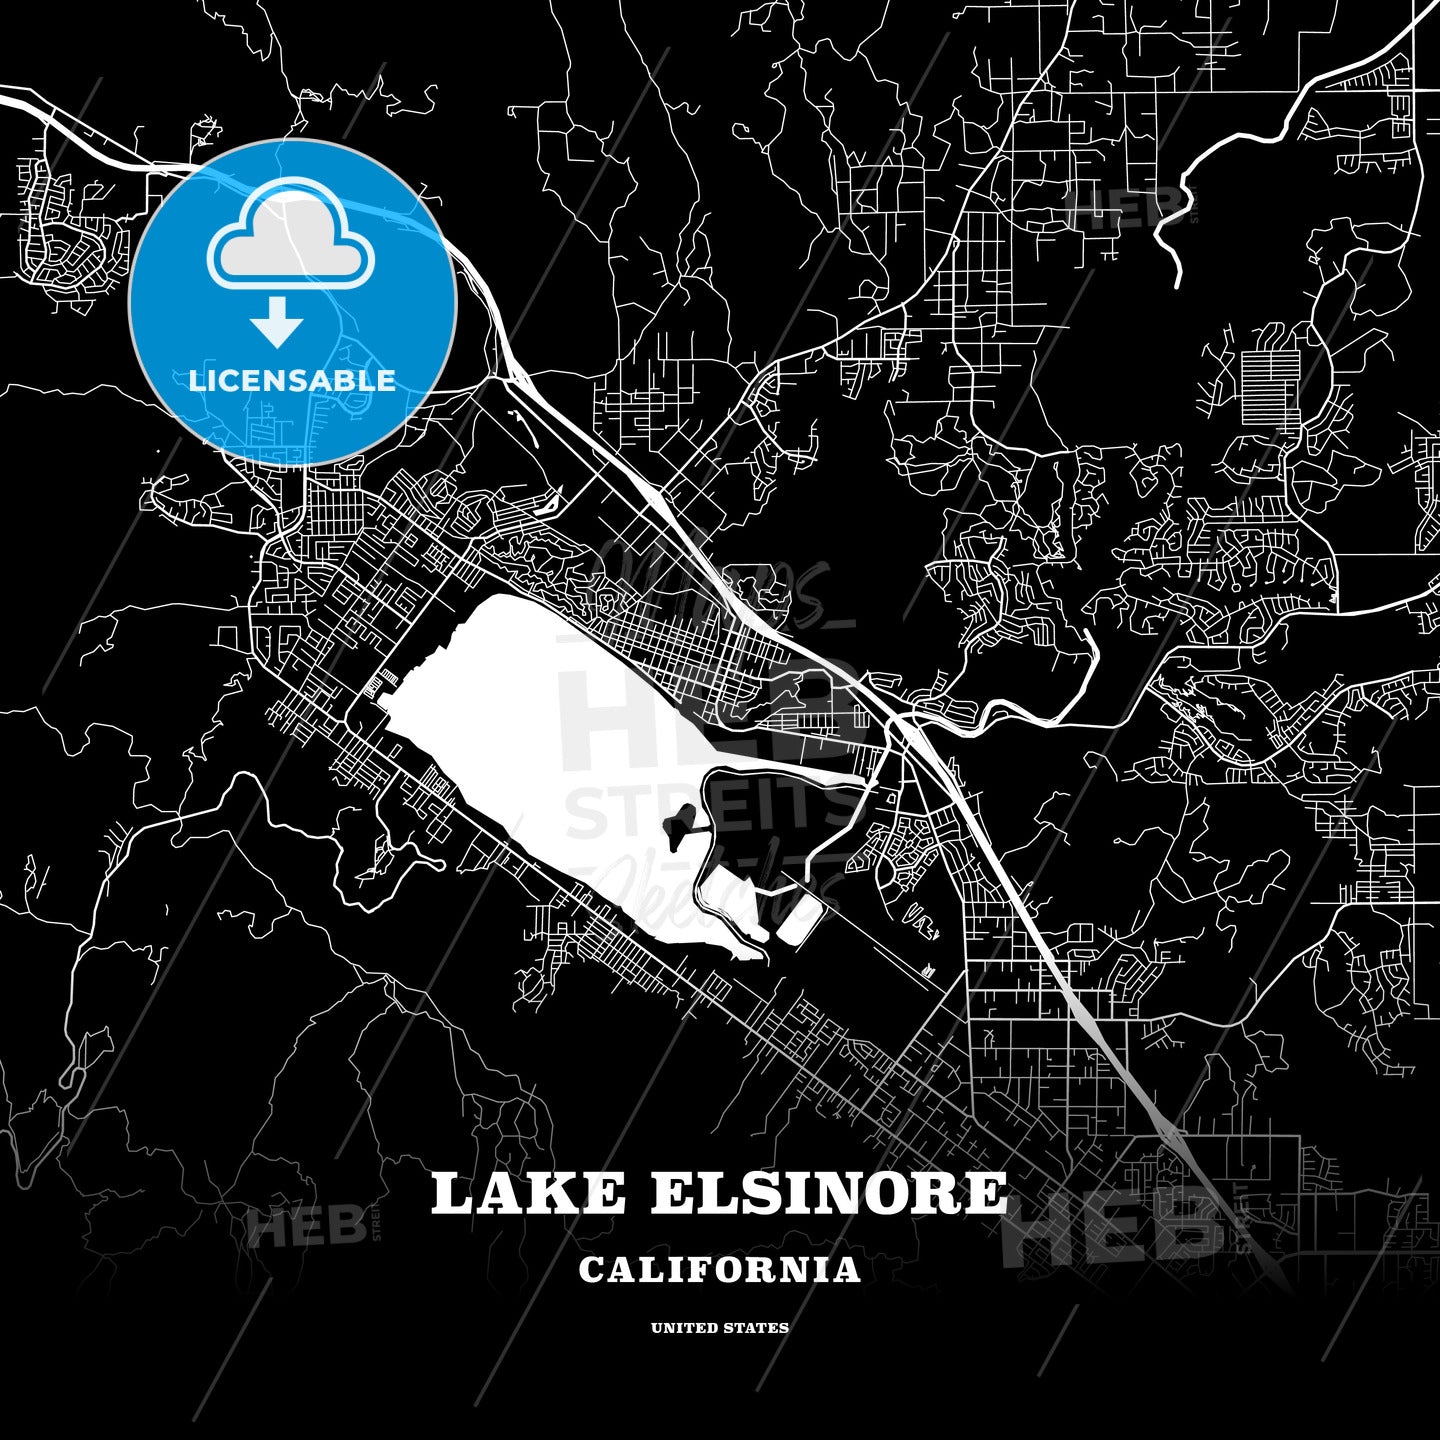 Lake Elsinore, California, USA map